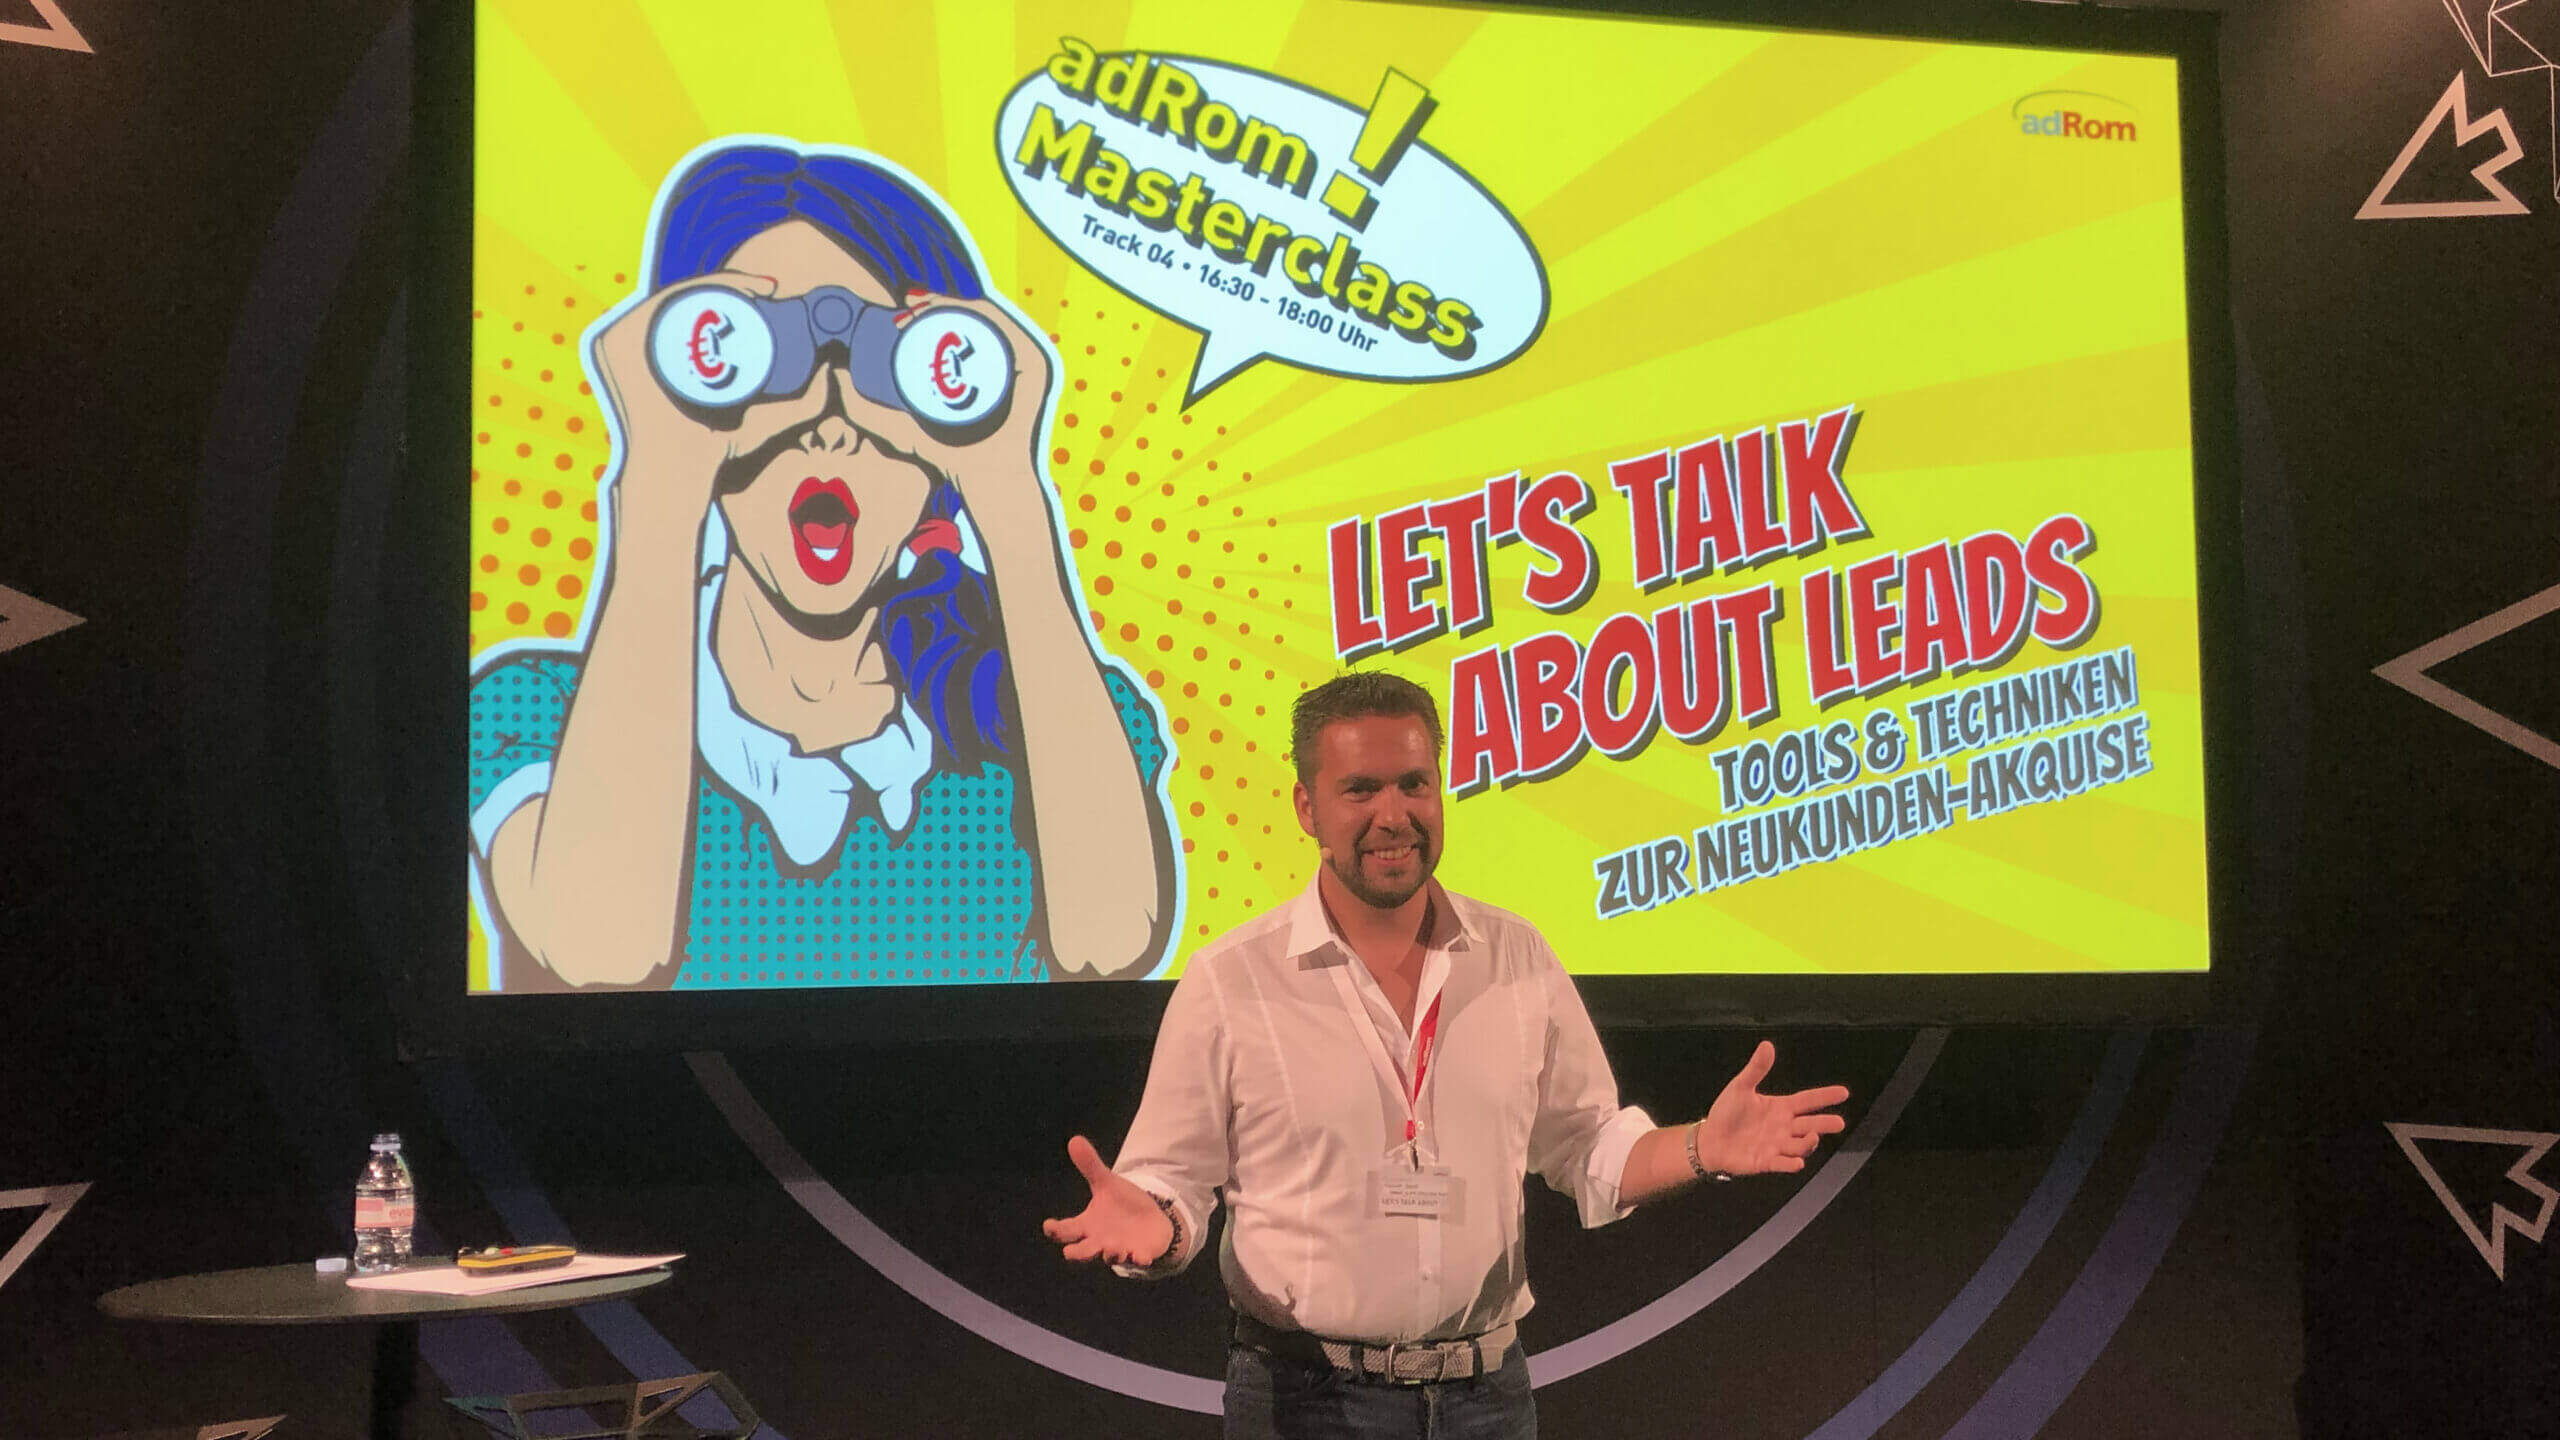 Mann vor einem Großen Screen mit Text im Comic Style - Let's talk about Leads